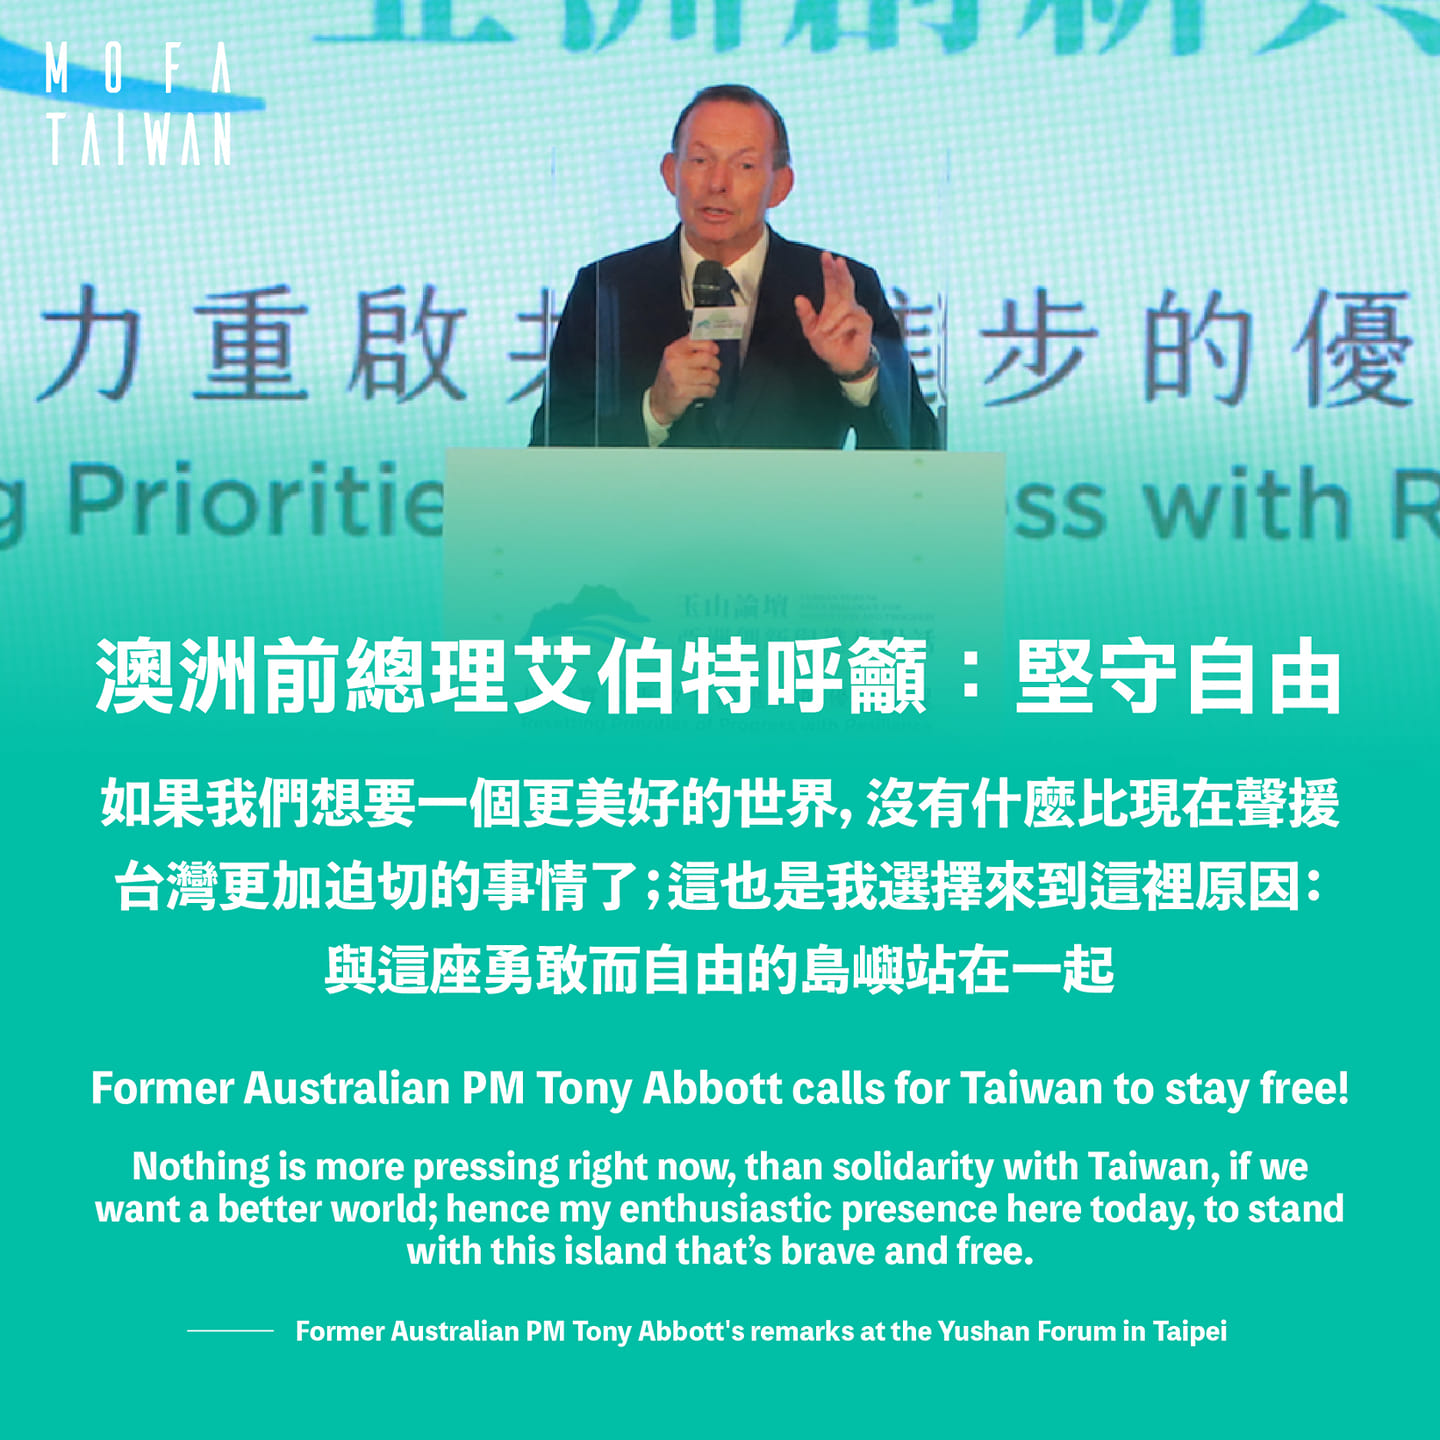 艾波特（Tony Abbott）8日於玉山論壇發表演講，適逢10月以來中國軍機擾台數量創新高之際，他此次訪台行程格外引起國際媒體關注。   圖/外交部 Ministry of Foreign Affairs, ROC（Taiwan）